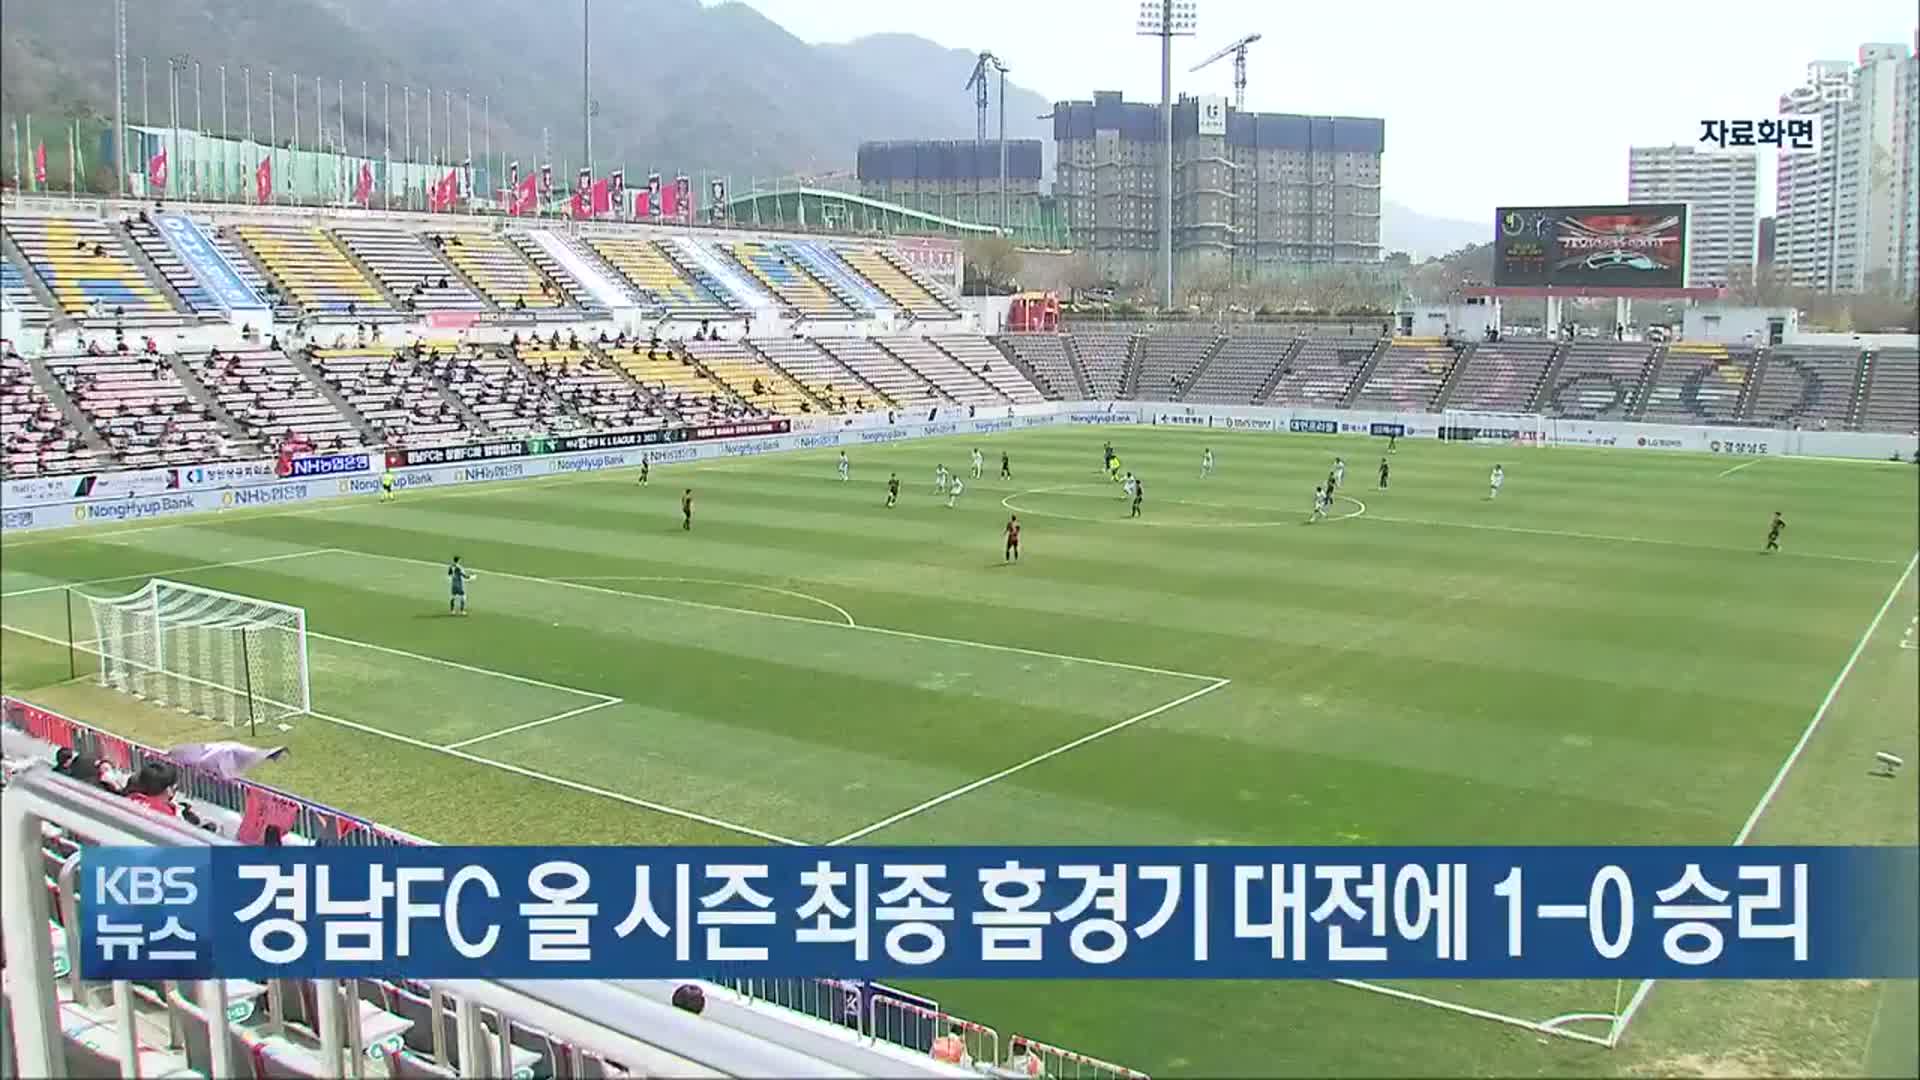 경남FC 올 시즌 최종 홈경기 대전에 1-0 승리